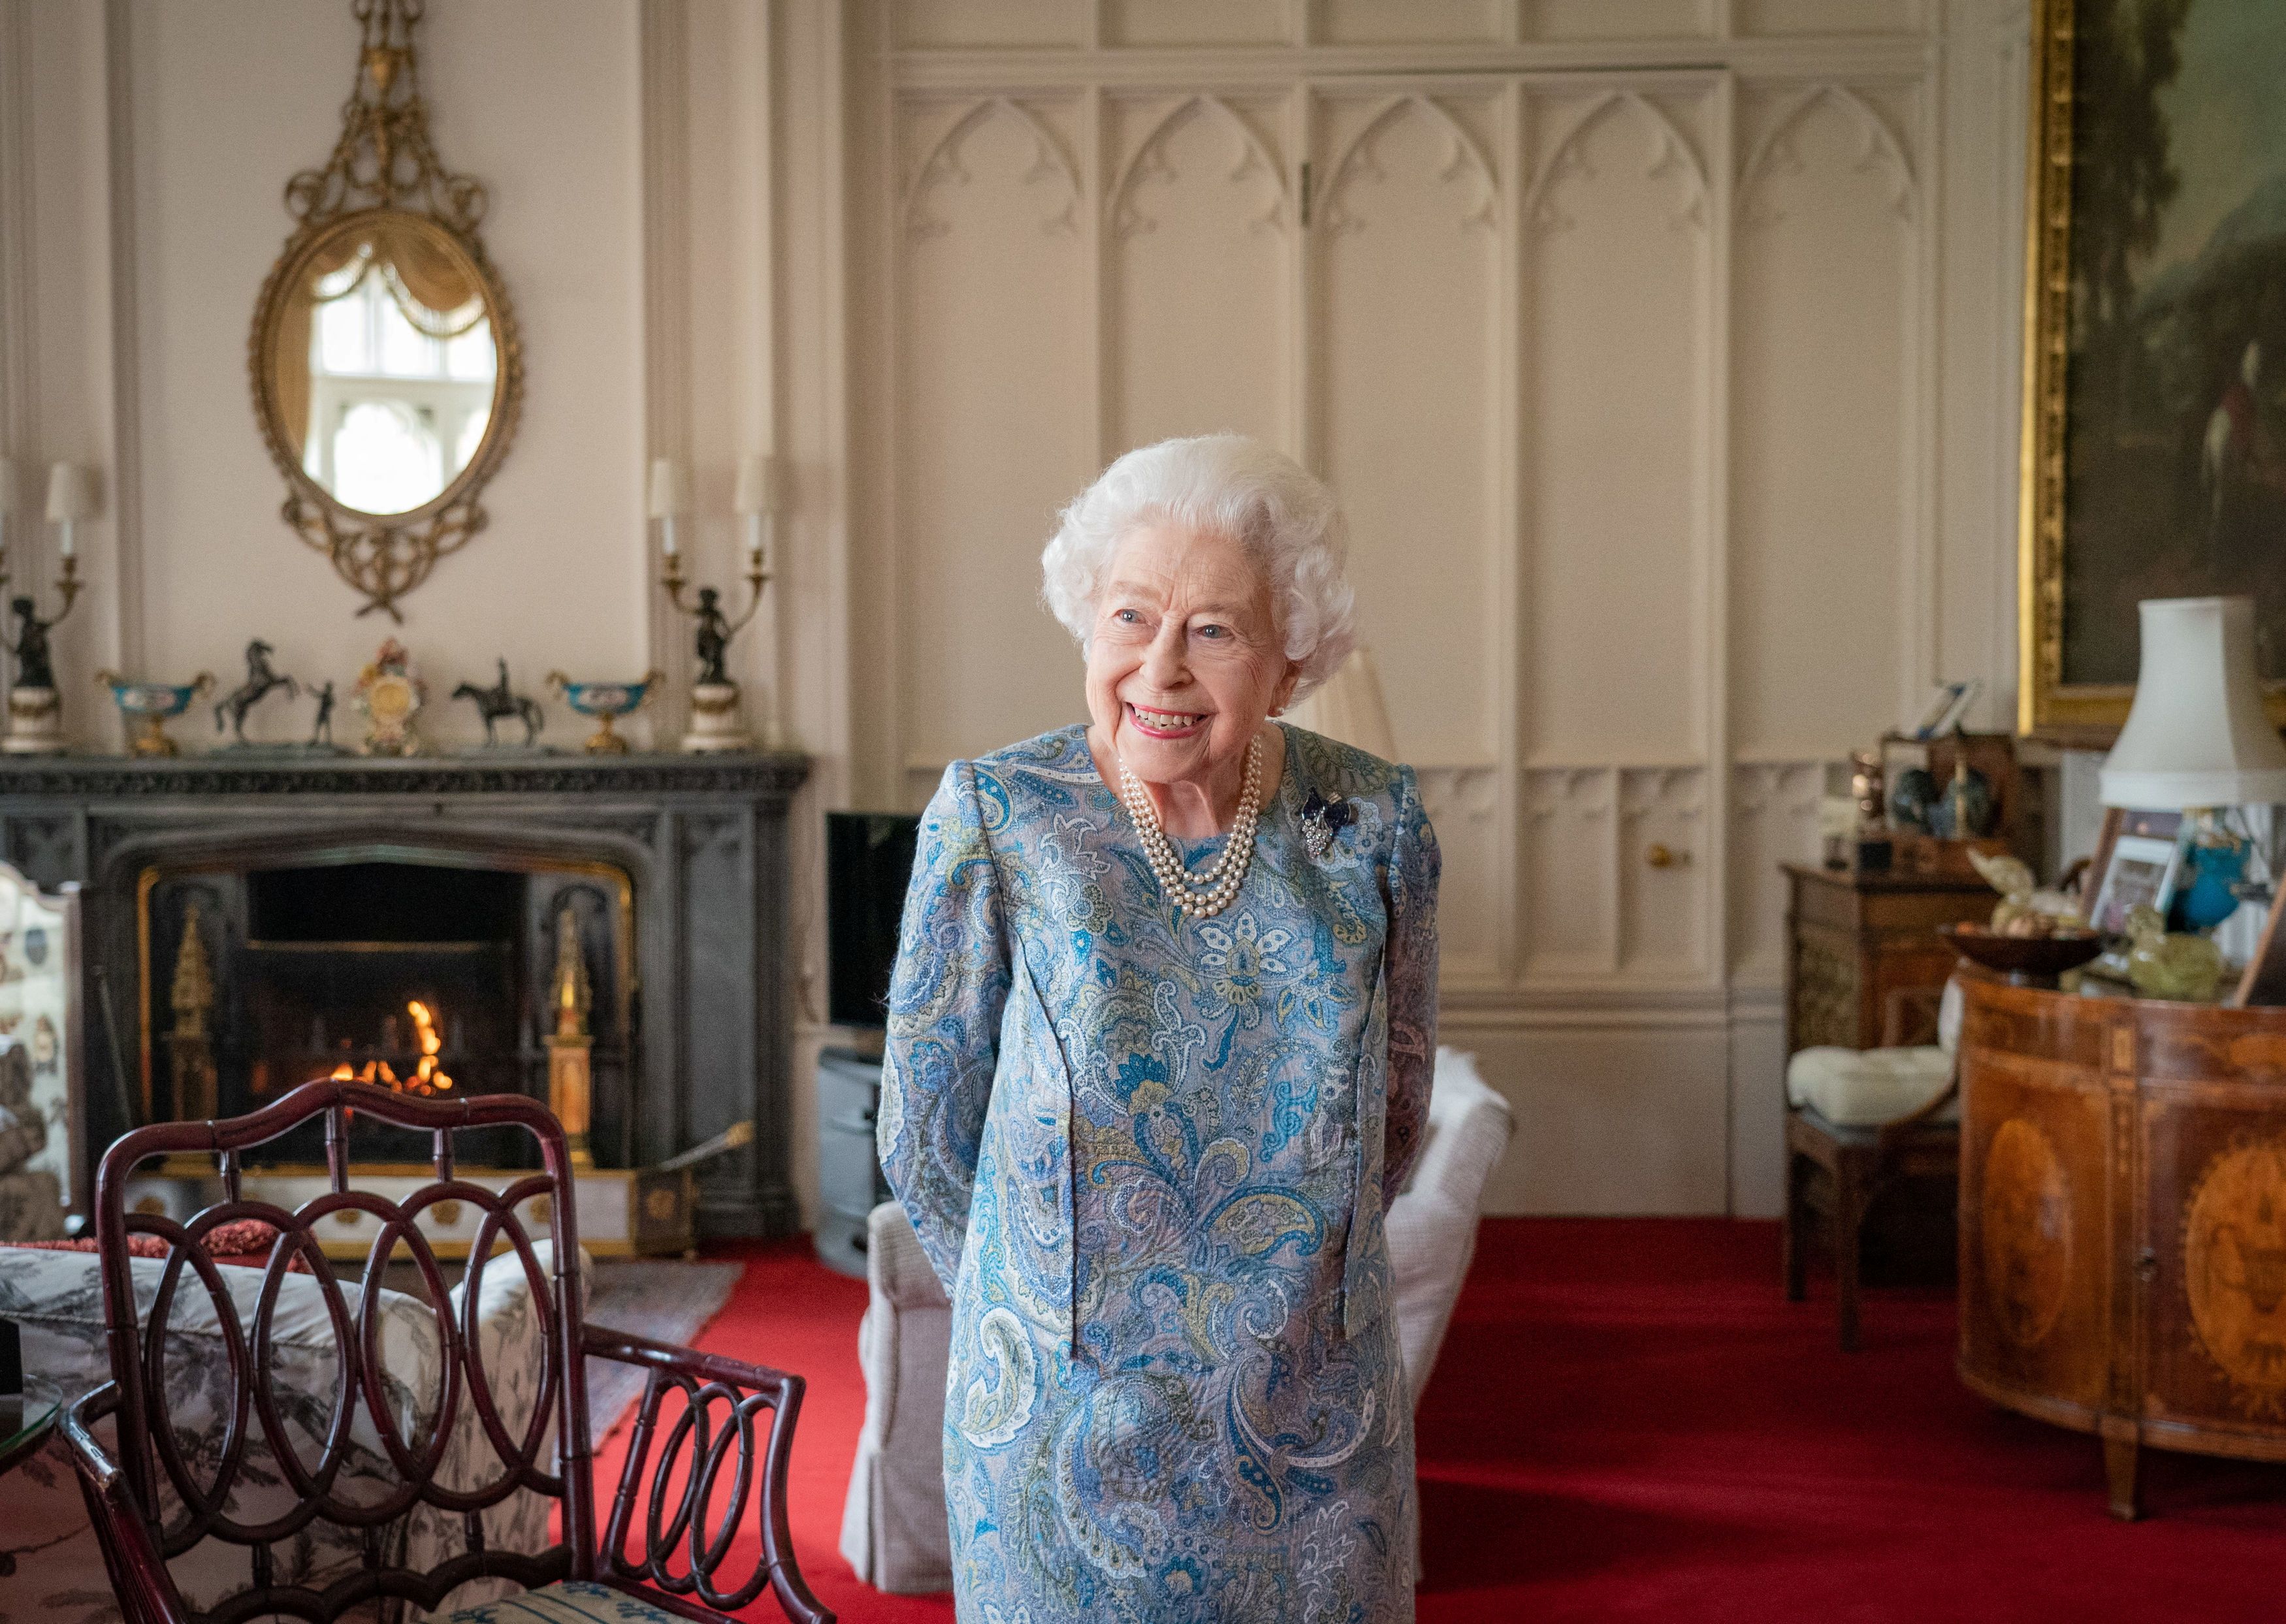 Britain's Queen Elizabeth meets Switzerland's President Cassis at Windsor Castle